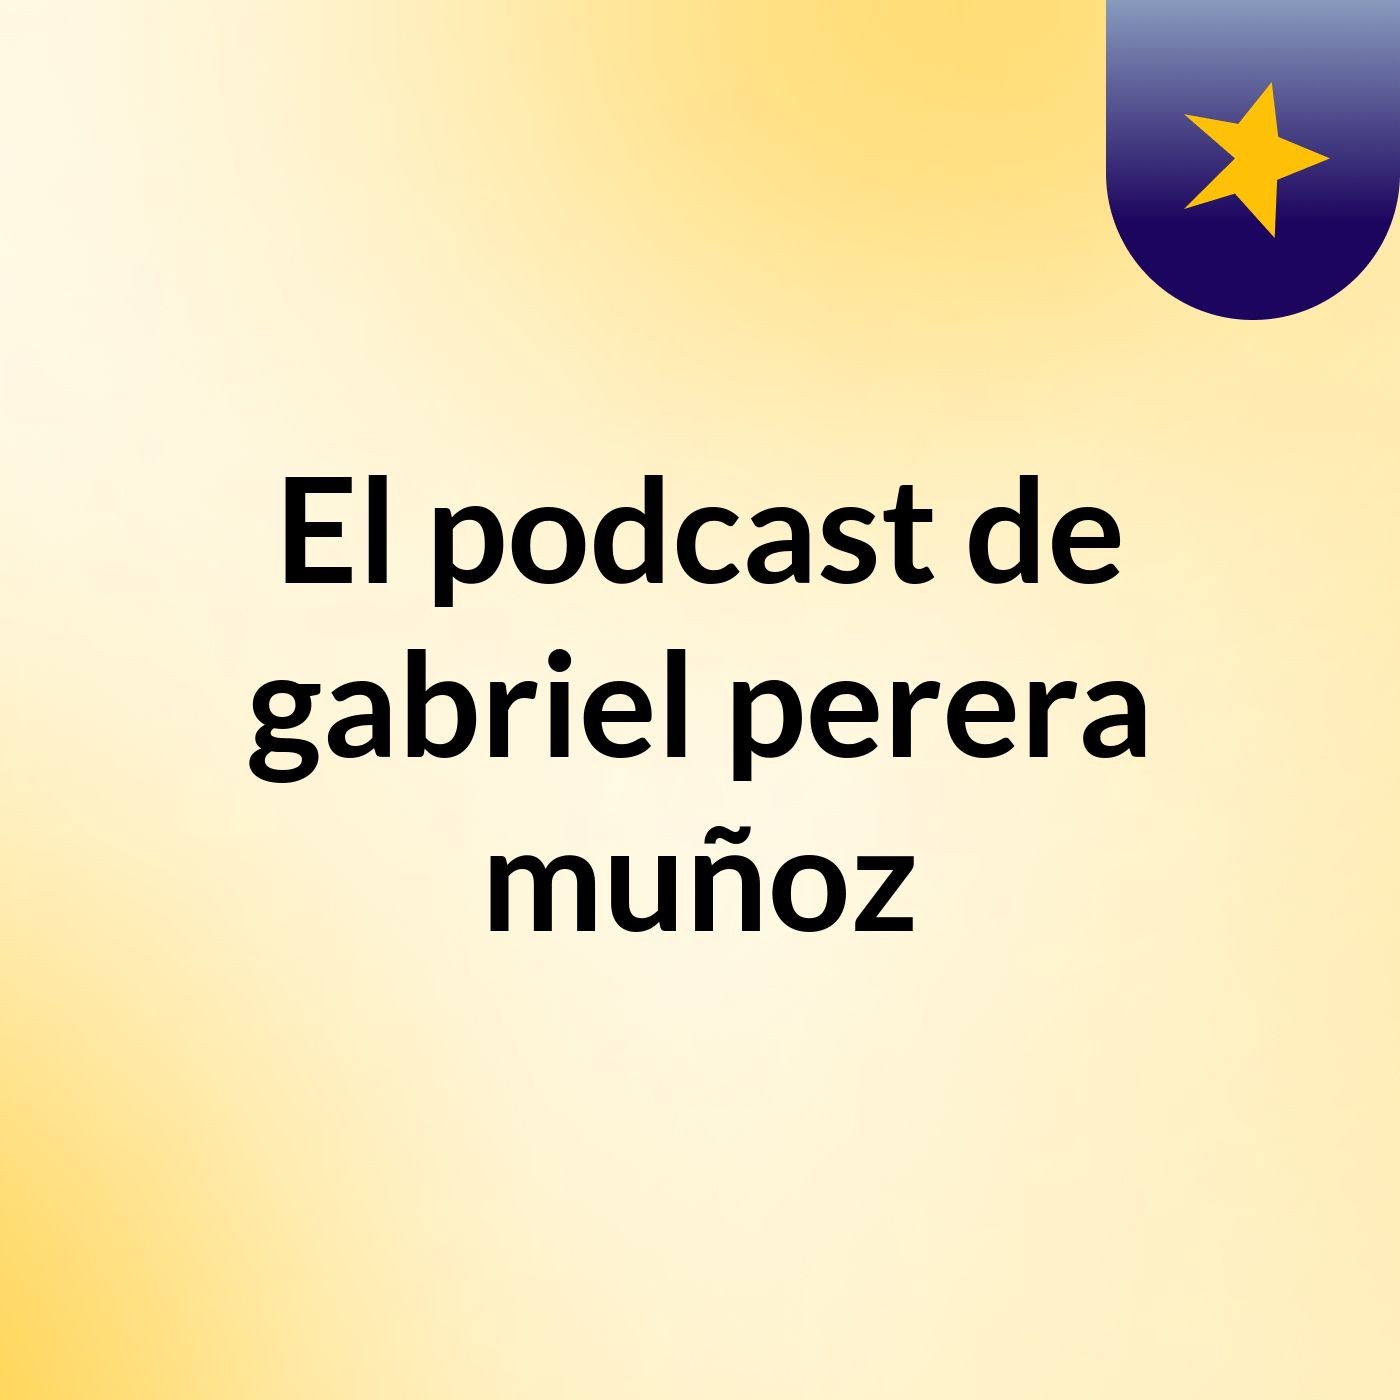 Episodio 10 - El podcast de gabriel perera muñoz